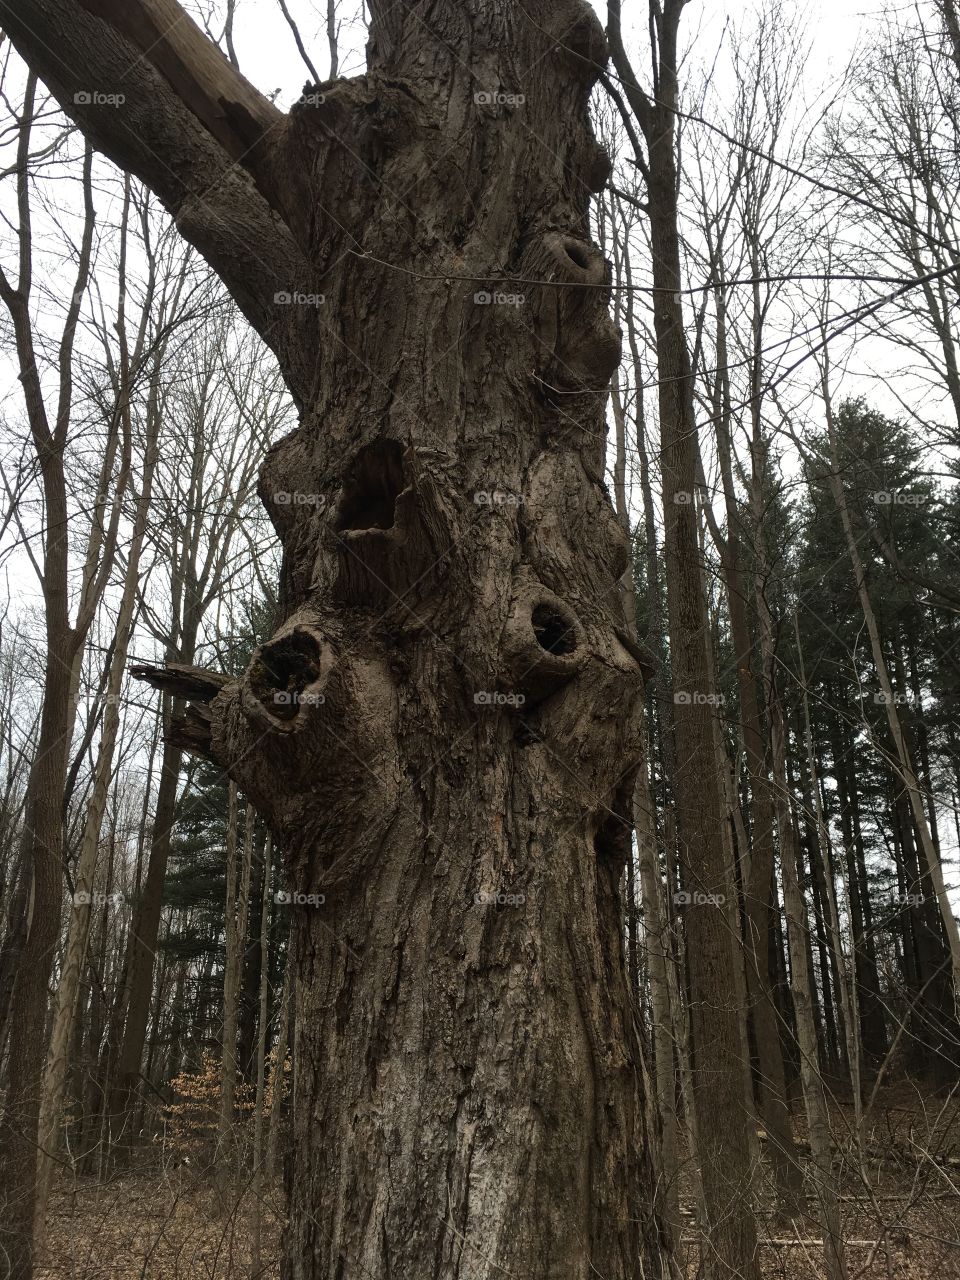 Creepy tree